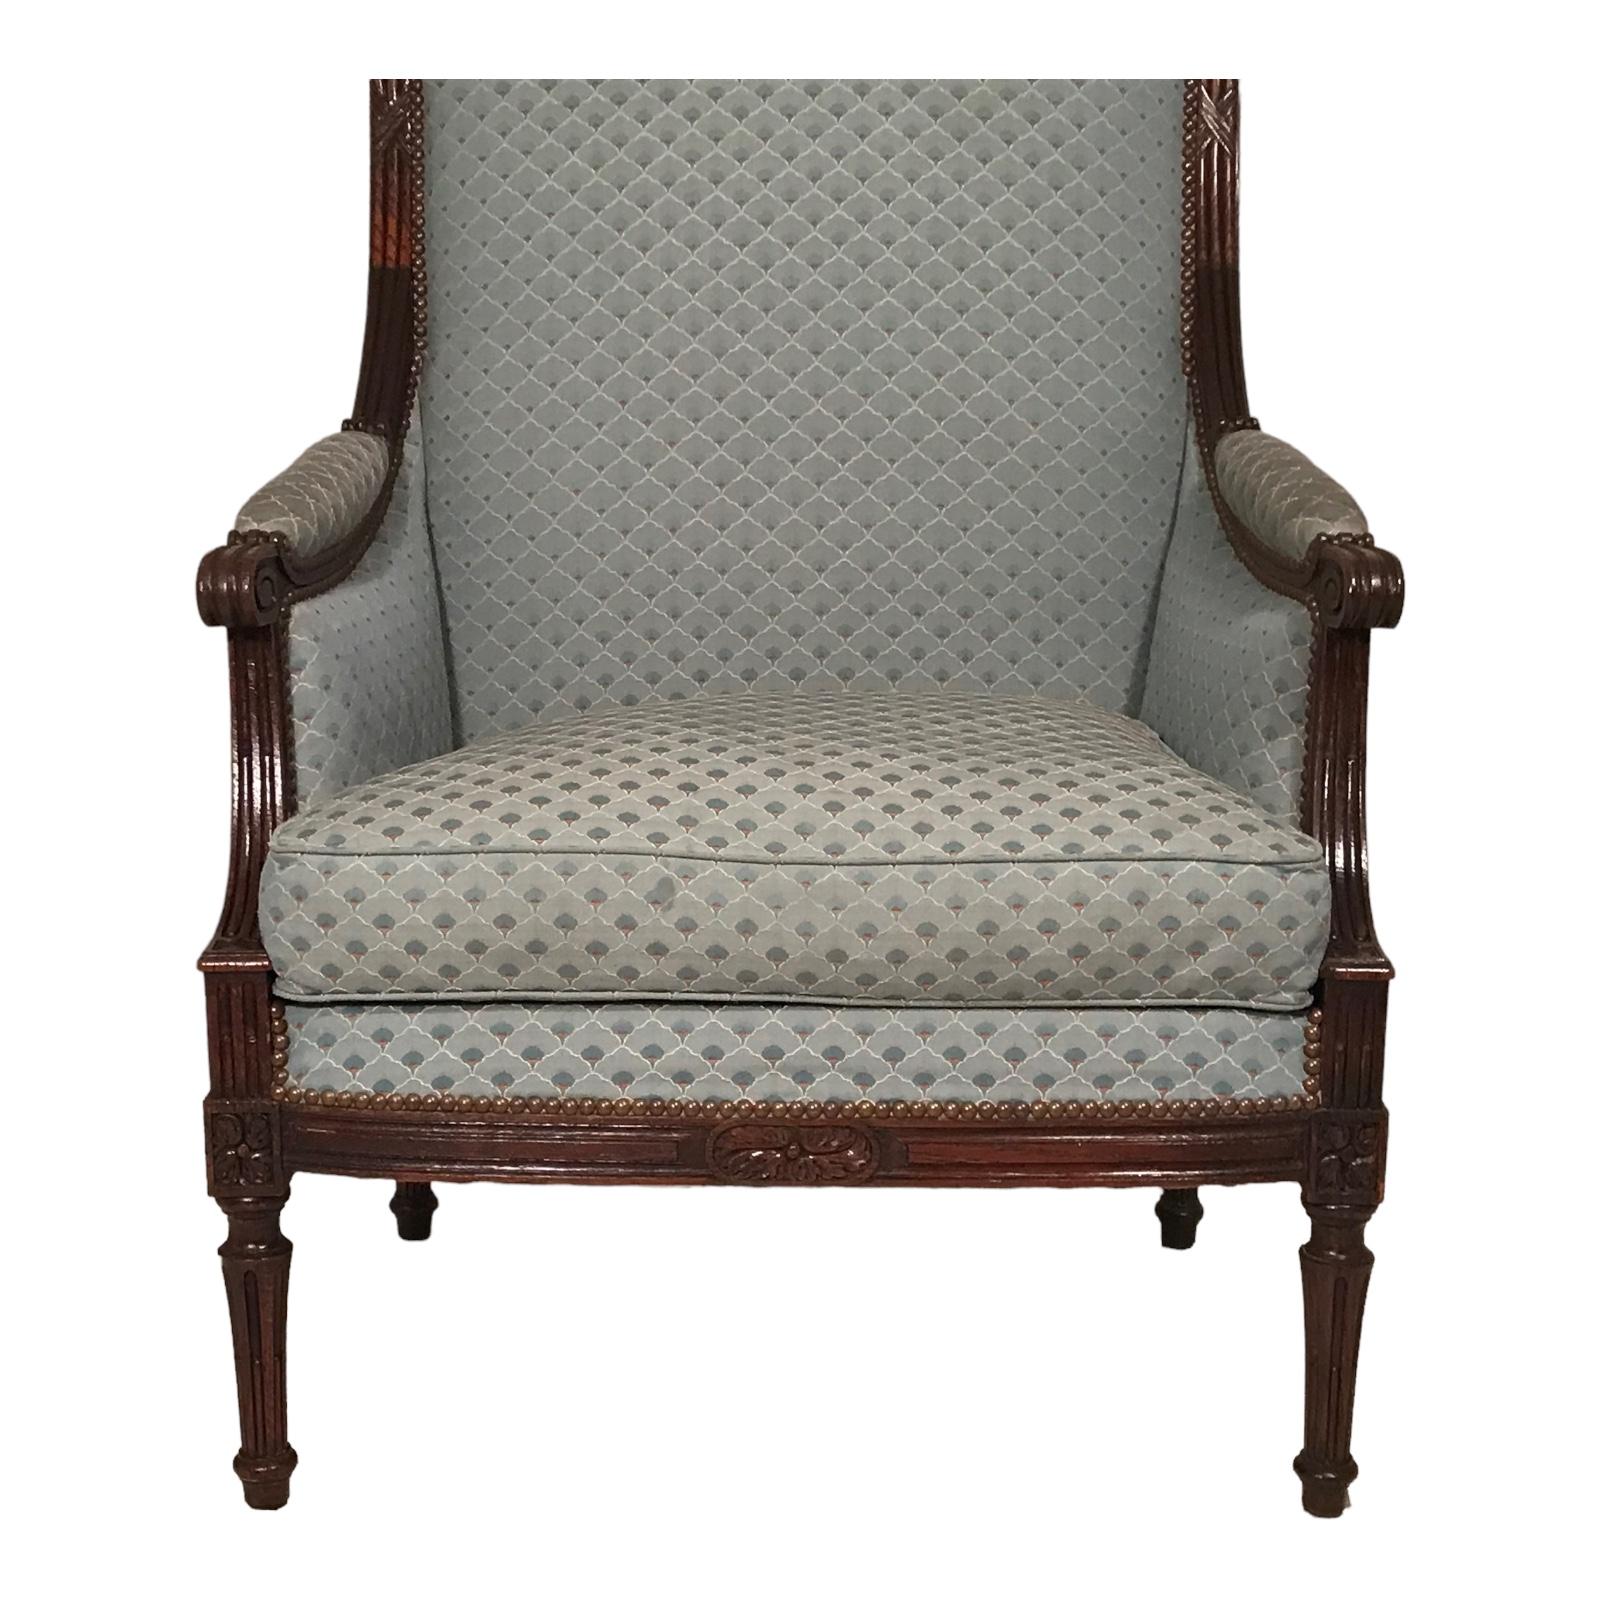 Cette paire très décorative de fauteuils Bergère de style Louis XVI provient de France et date de 1860-70. Elles ont un cadre en chêne avec un décor sculpté. Les fauteuils sont très confortables. Le bois a été retouché, la sellerie n'a pas été